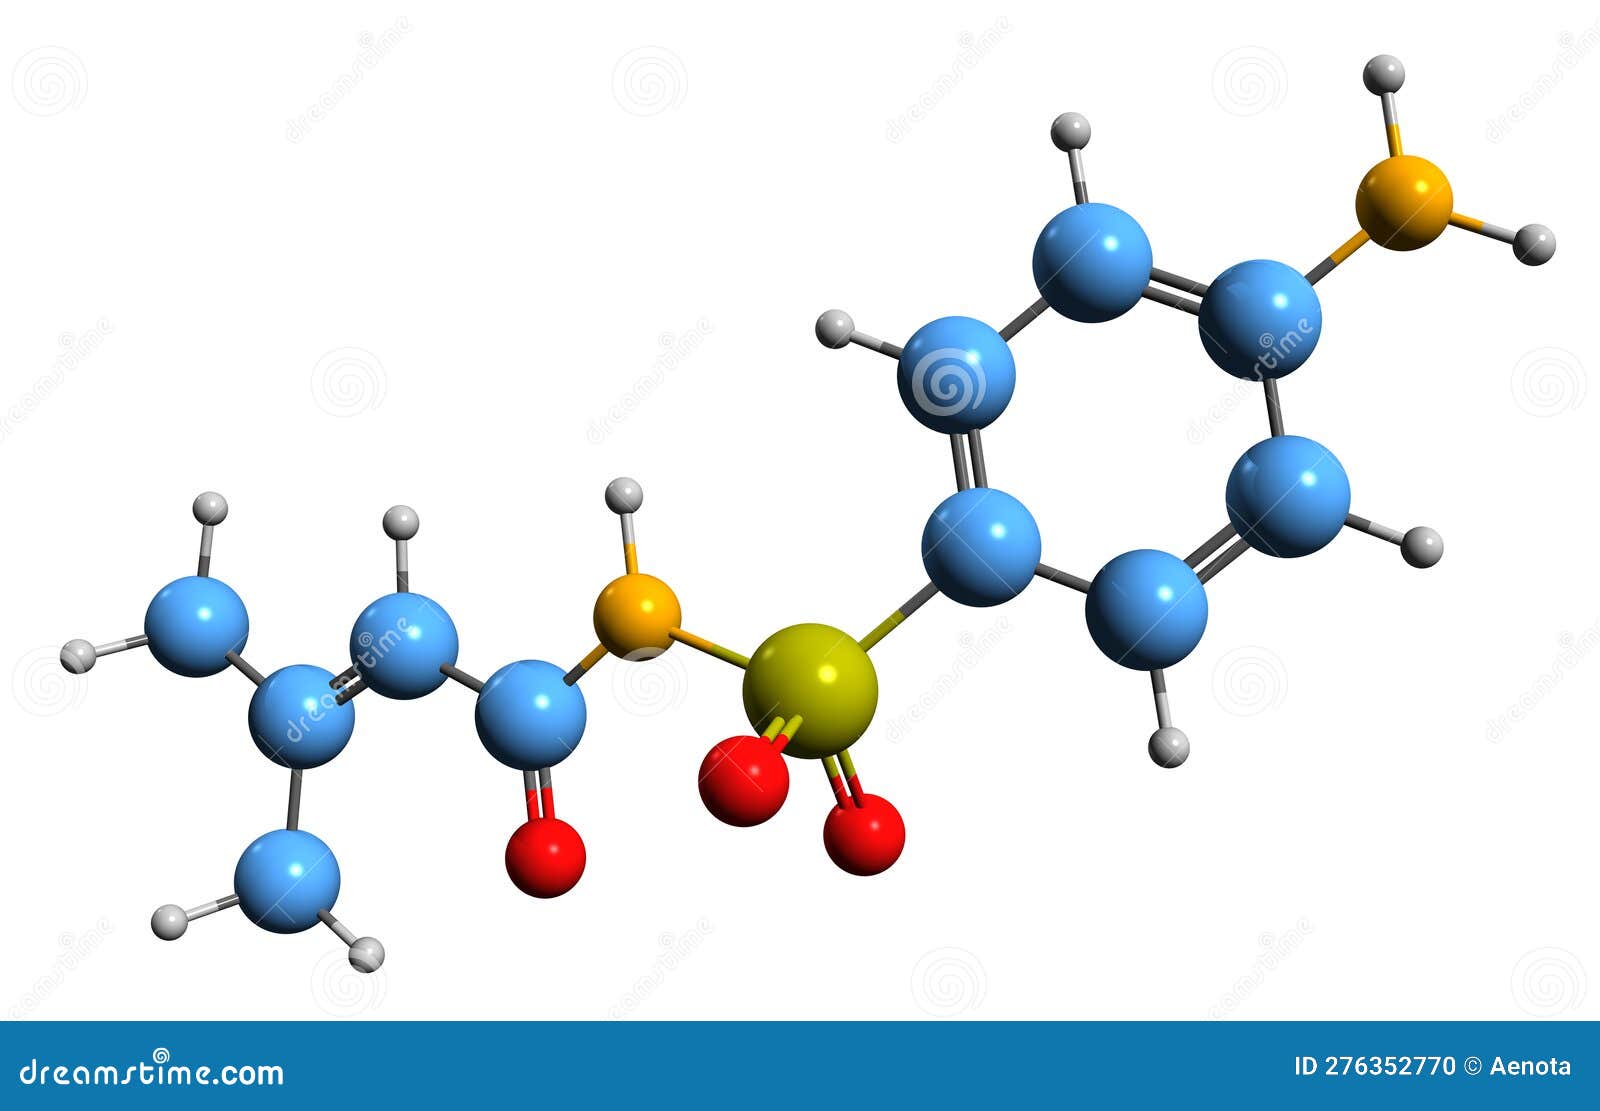 3d image of sulfadicramide skeletal formula